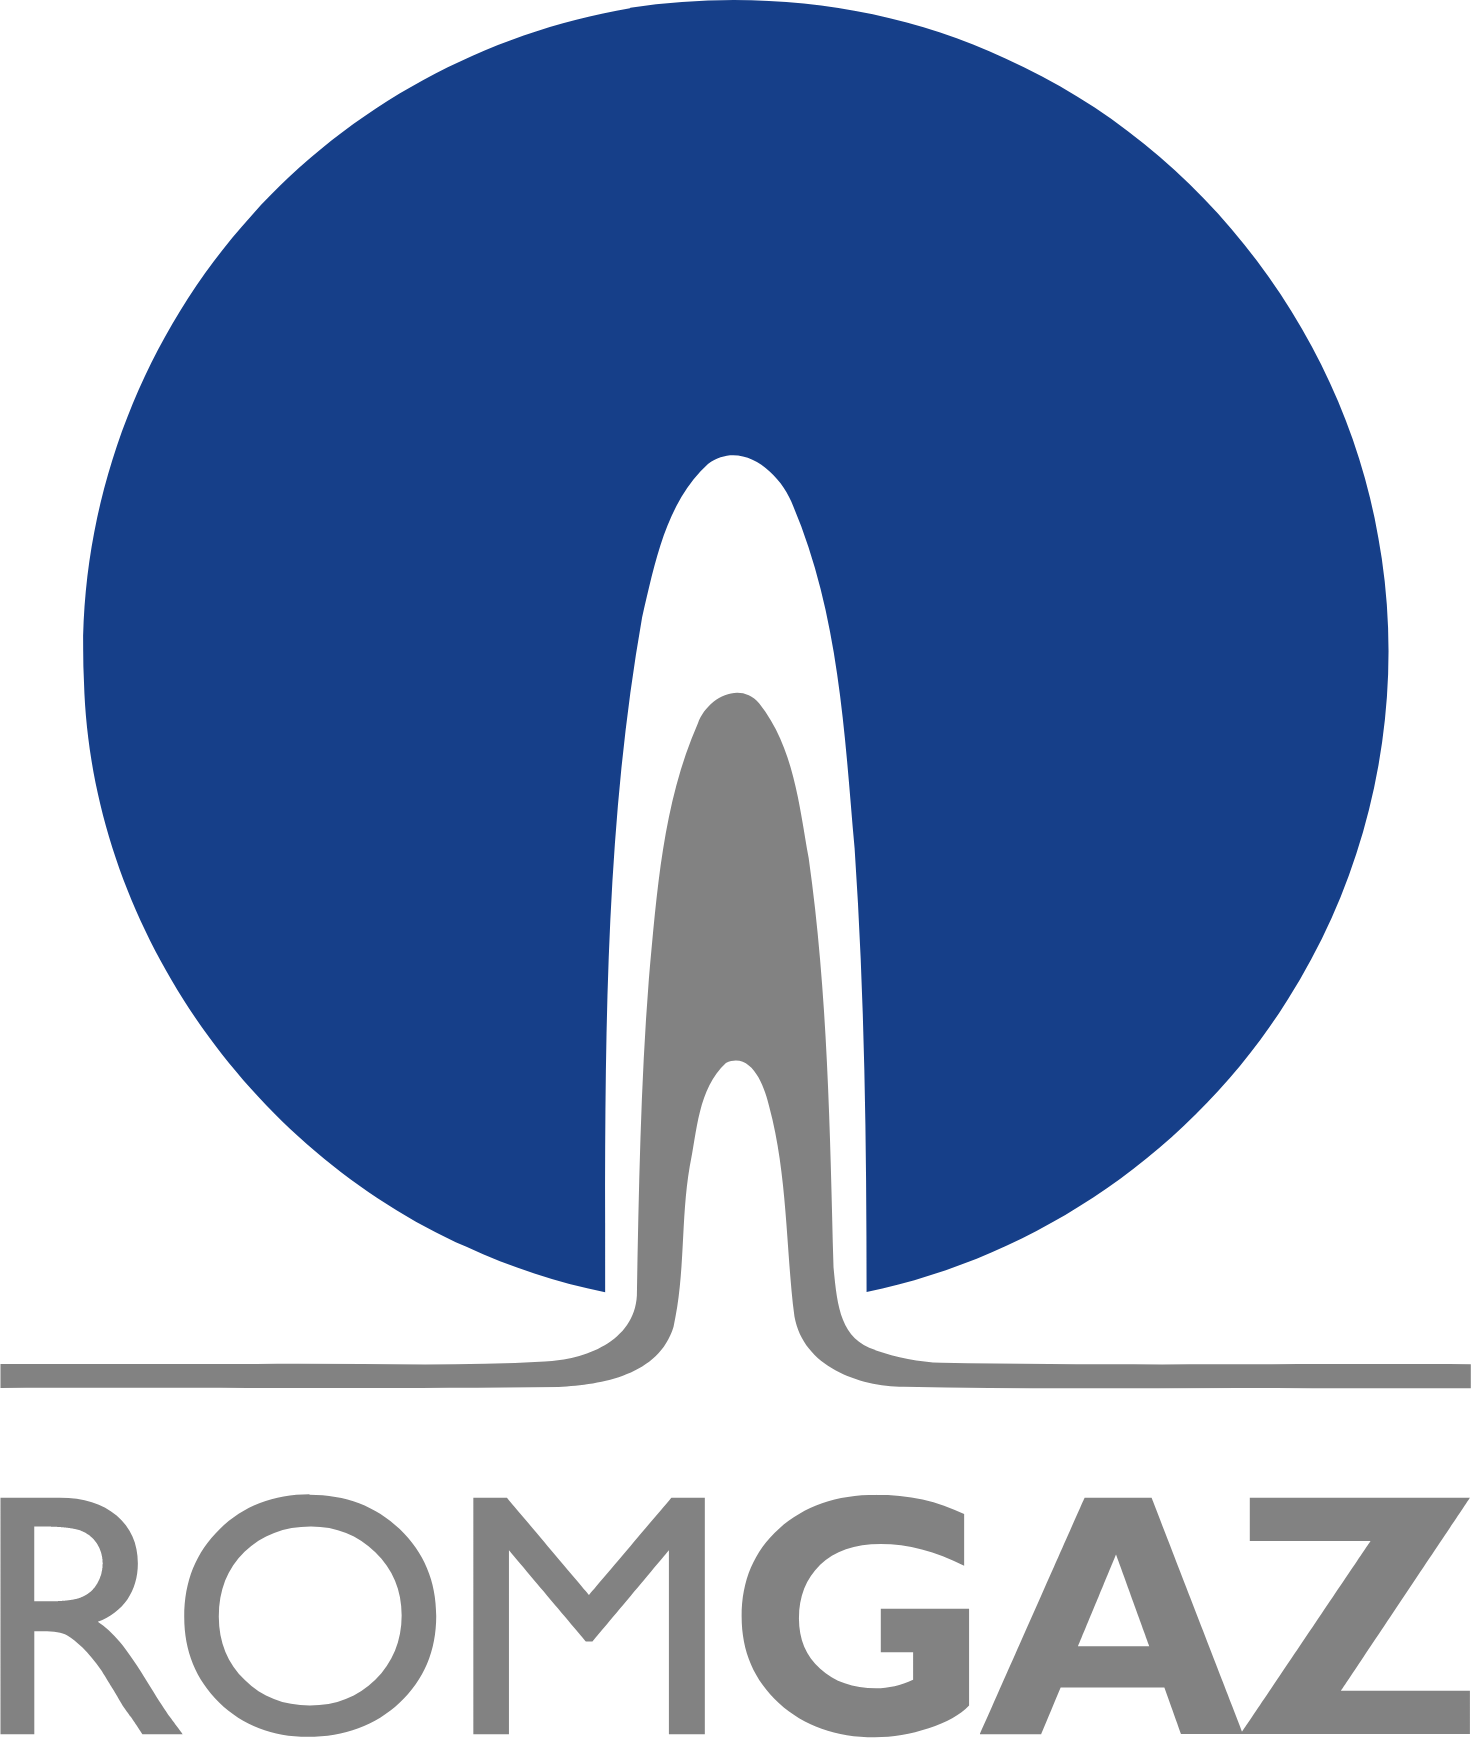 Romgaz logo large (transparent PNG)